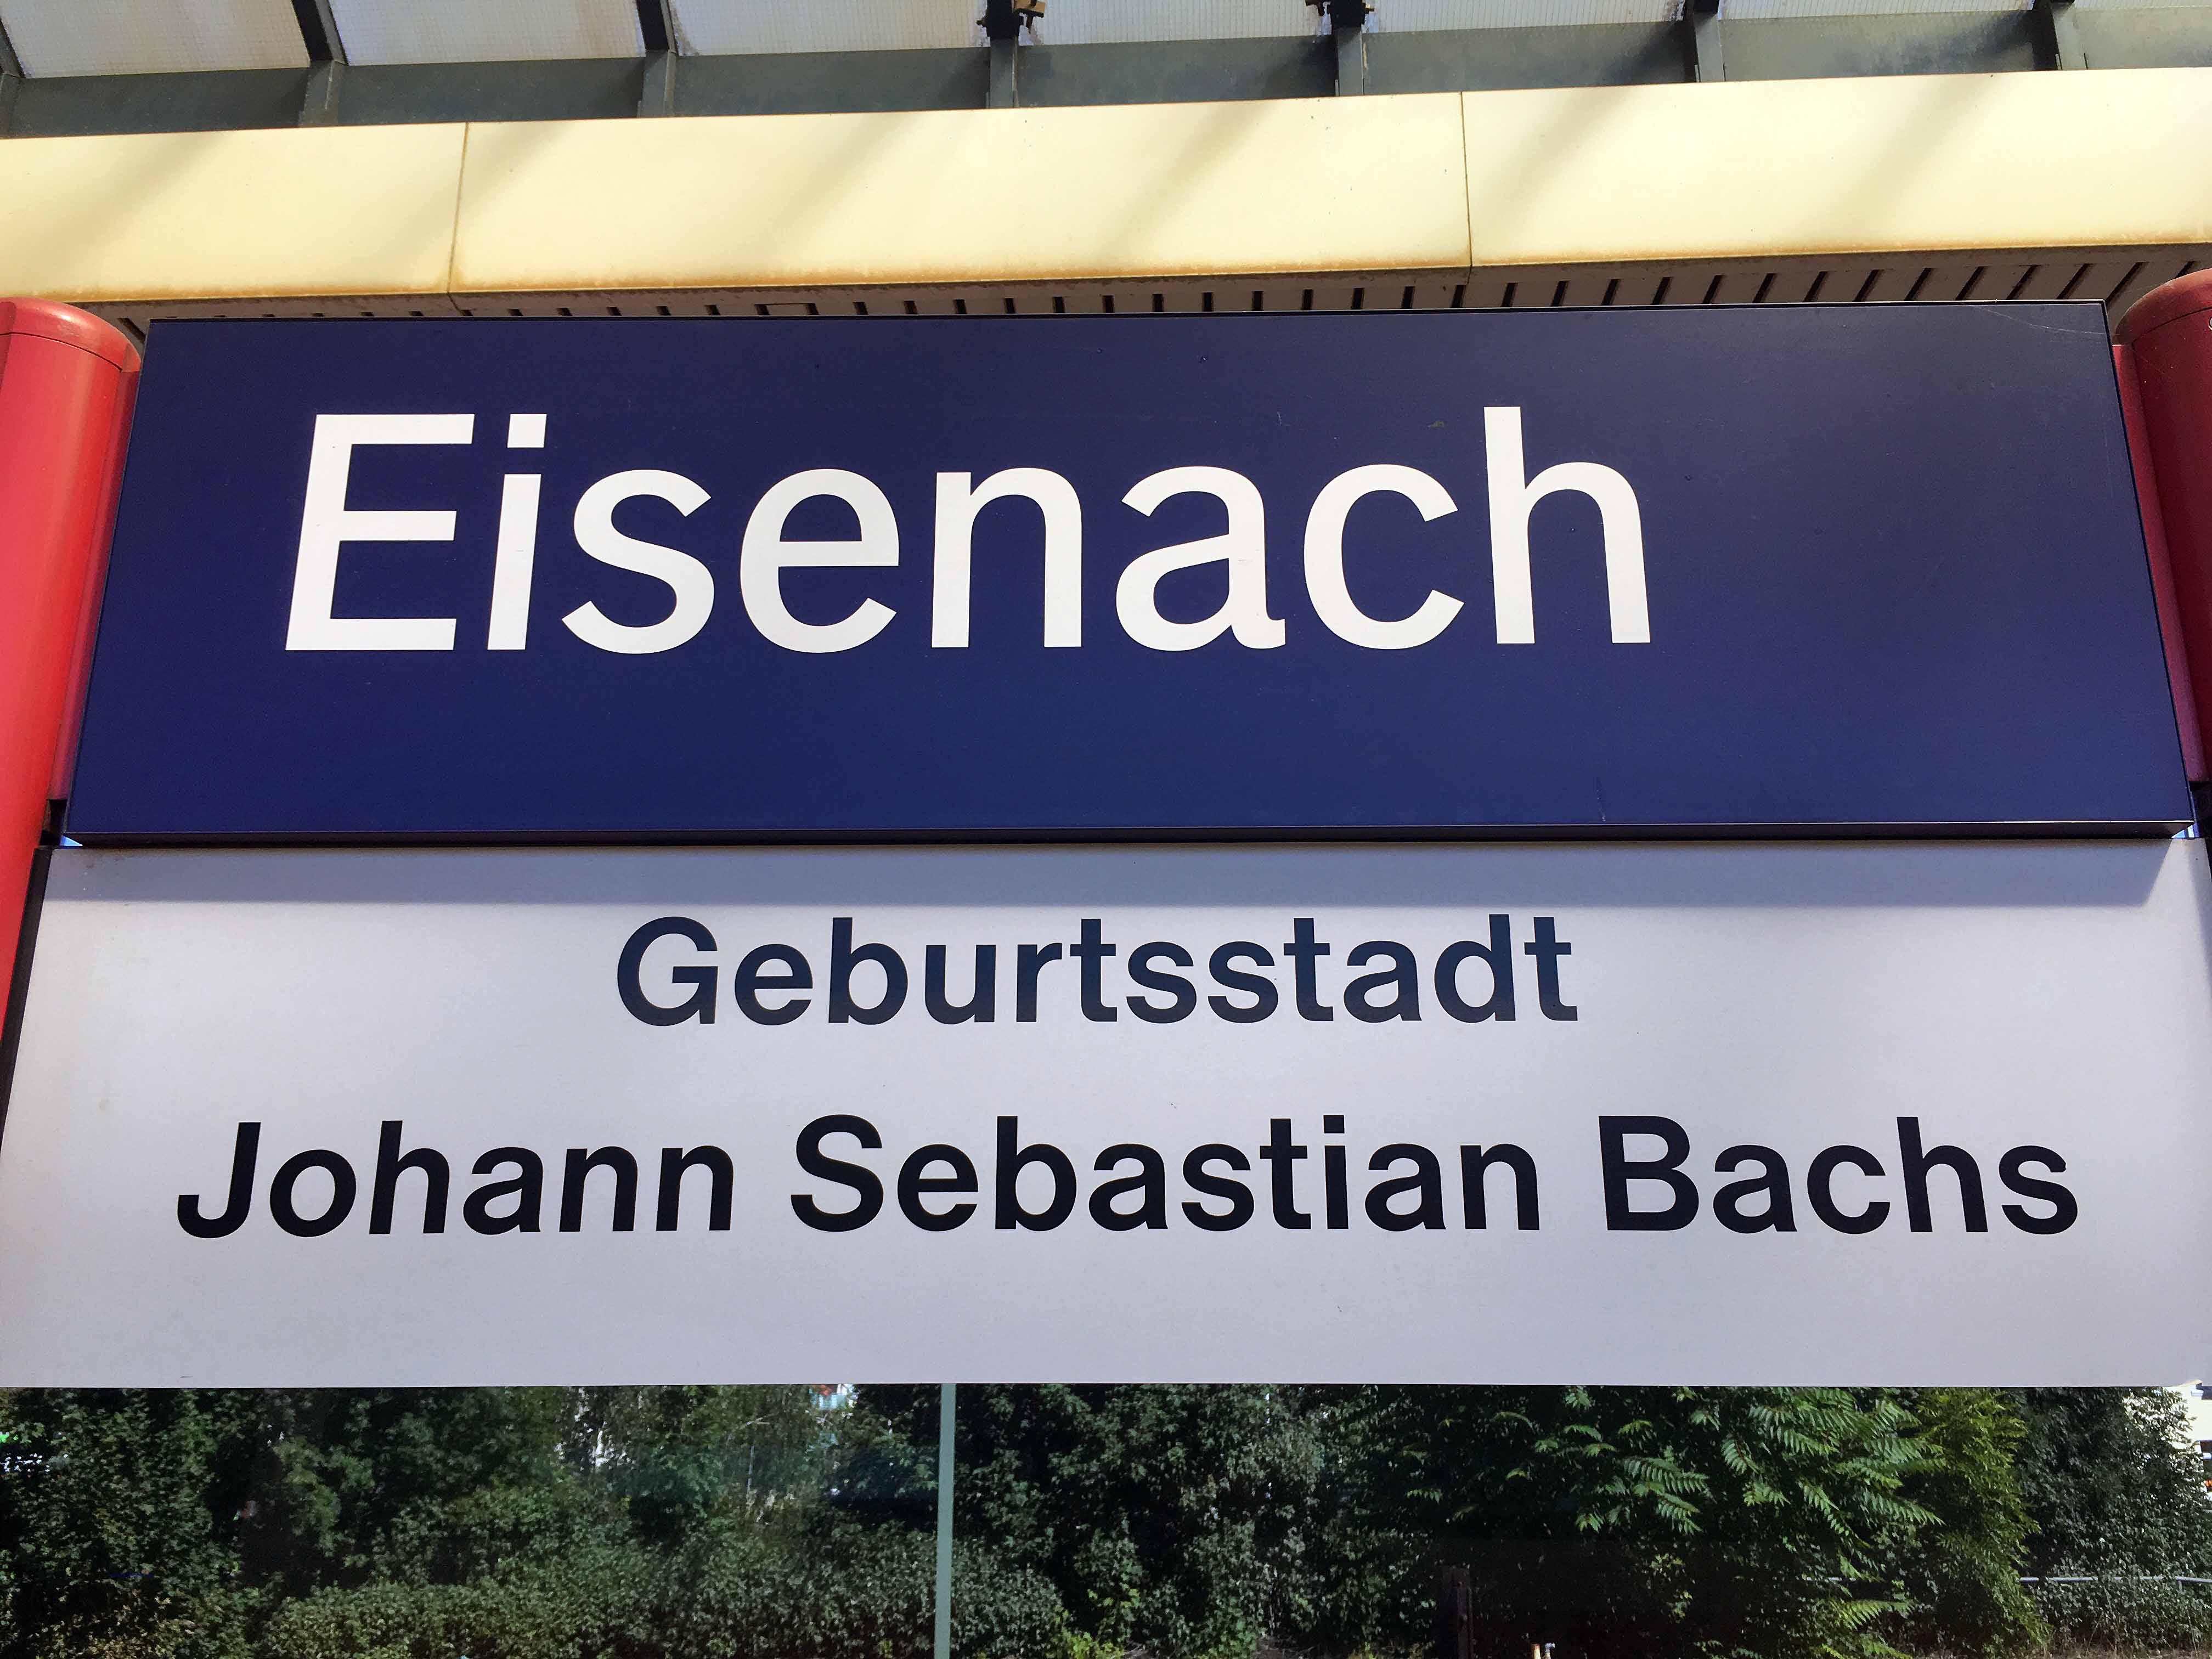 Begrüßung auf dem Bahnhof in Eisenach, Foto: D.Weirauch